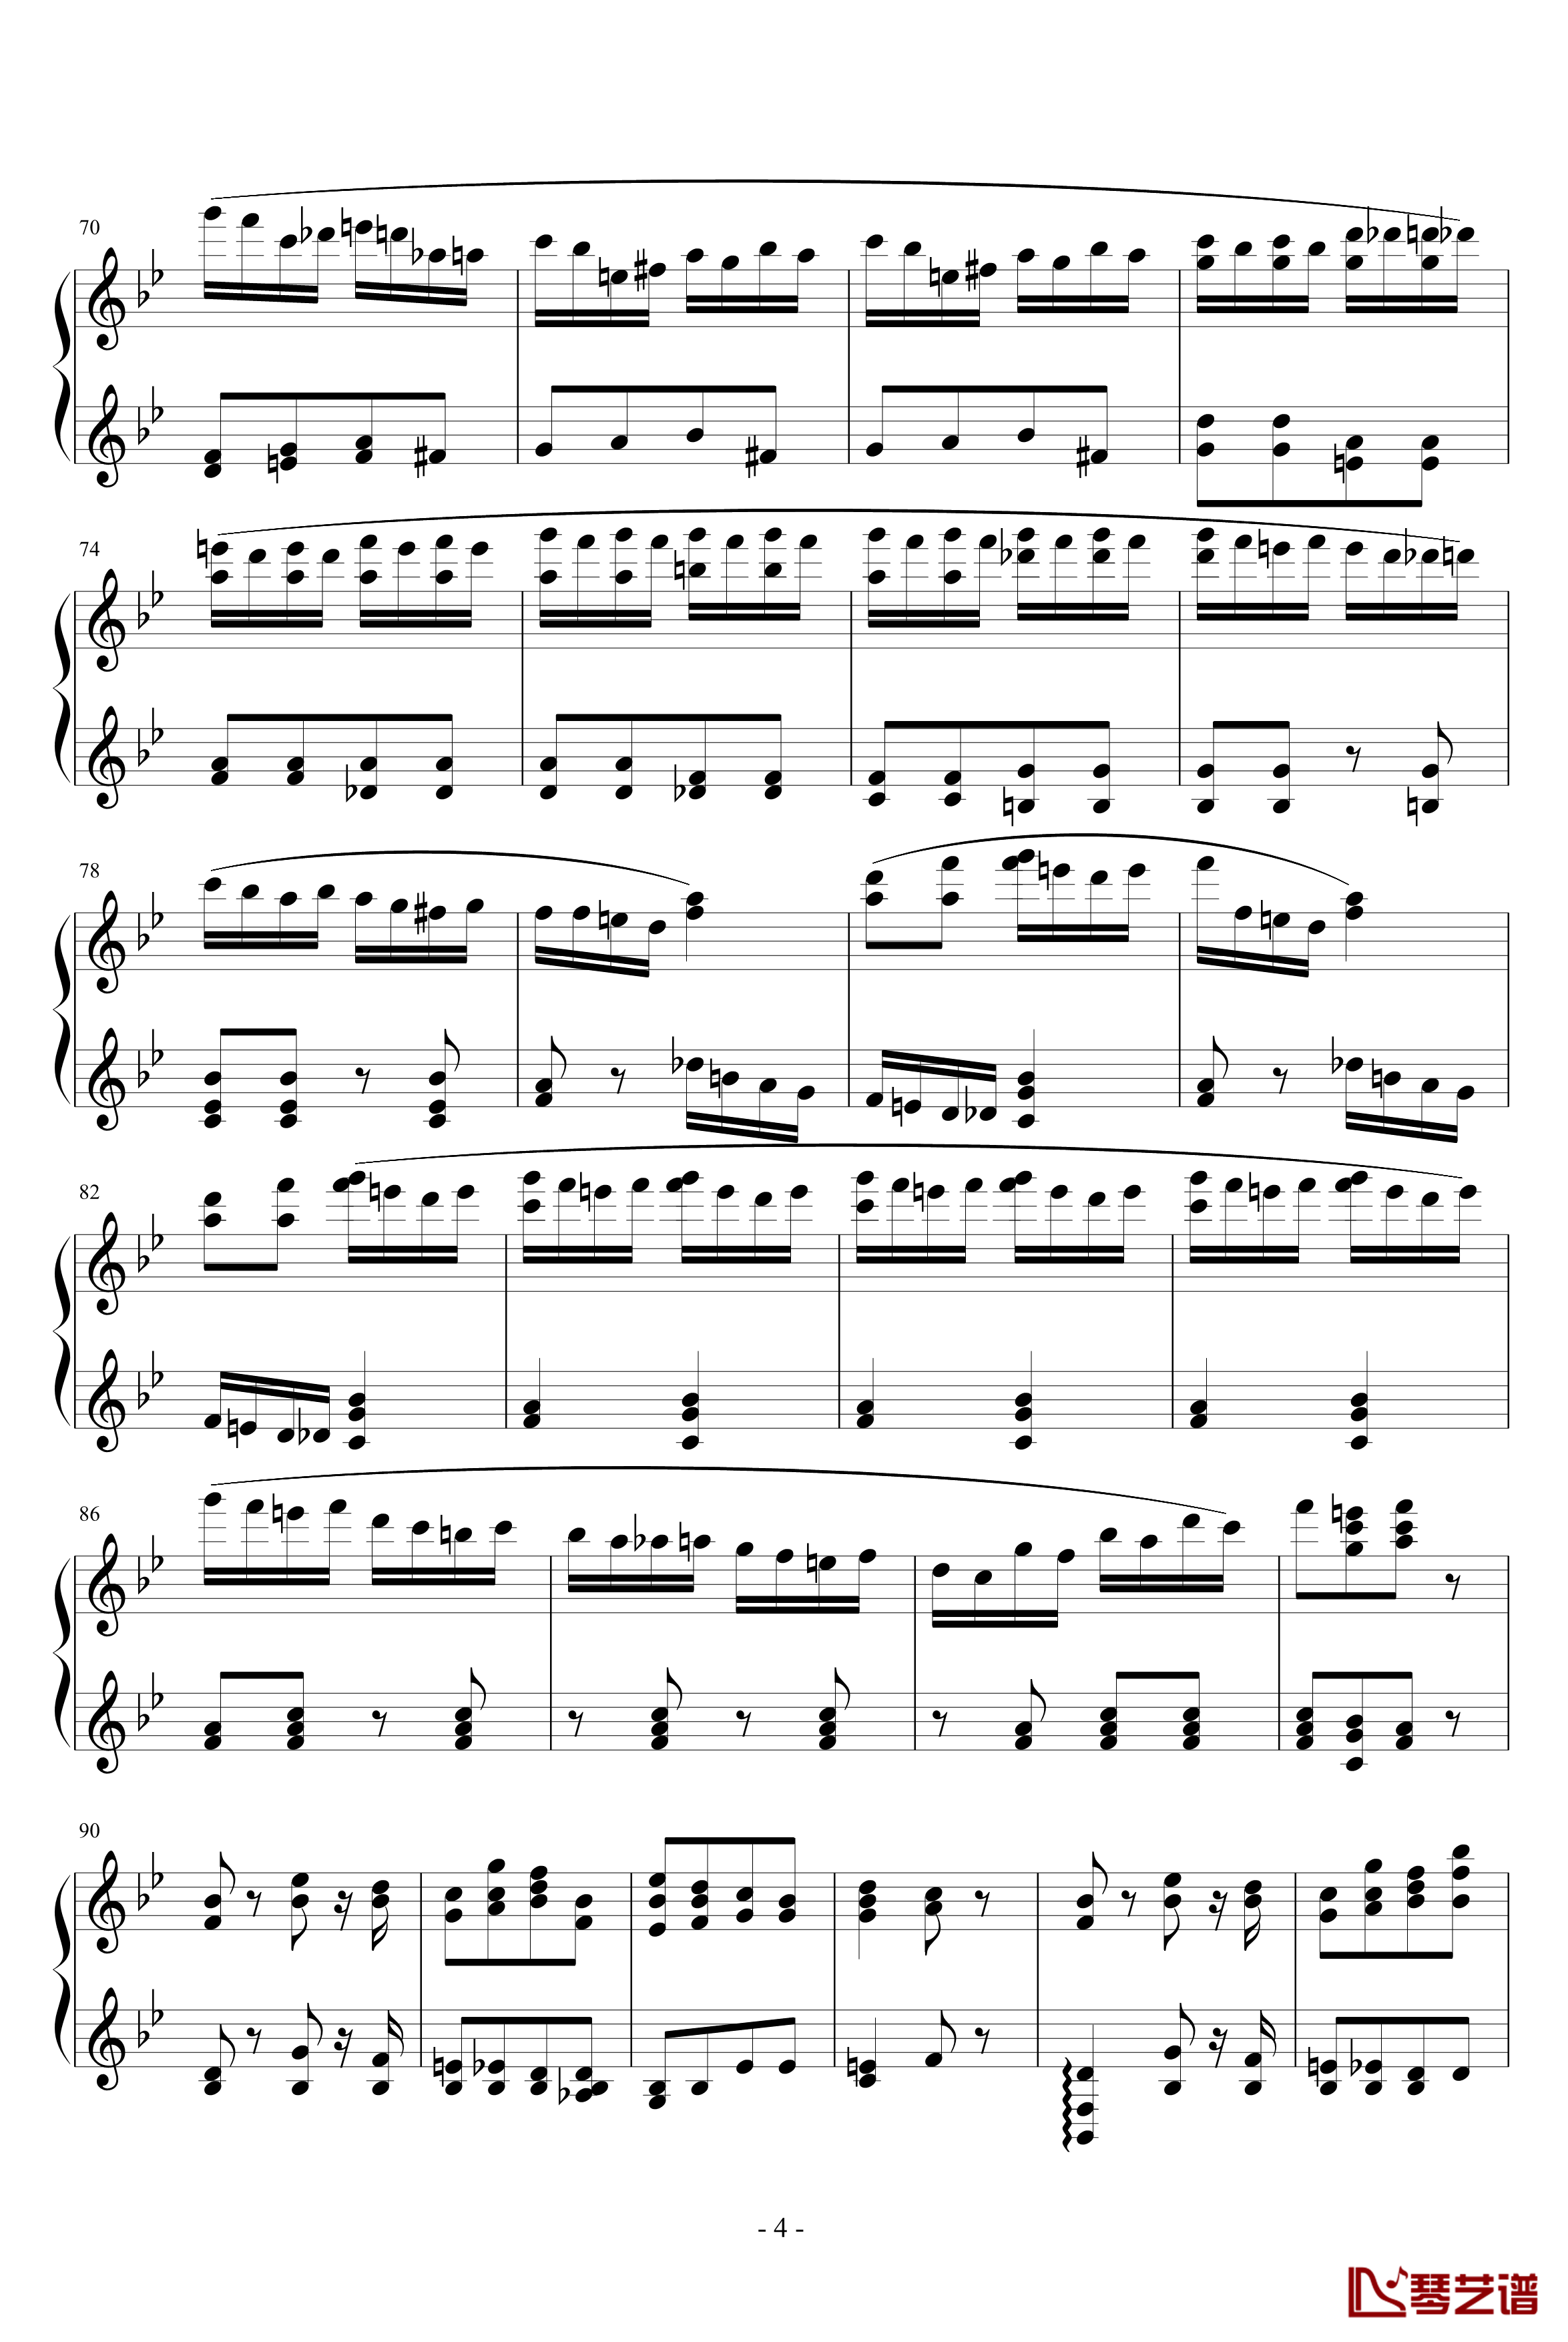 胡桃夹子序曲钢琴谱-柴科夫斯基-Peter Ilyich Tchaikovsky